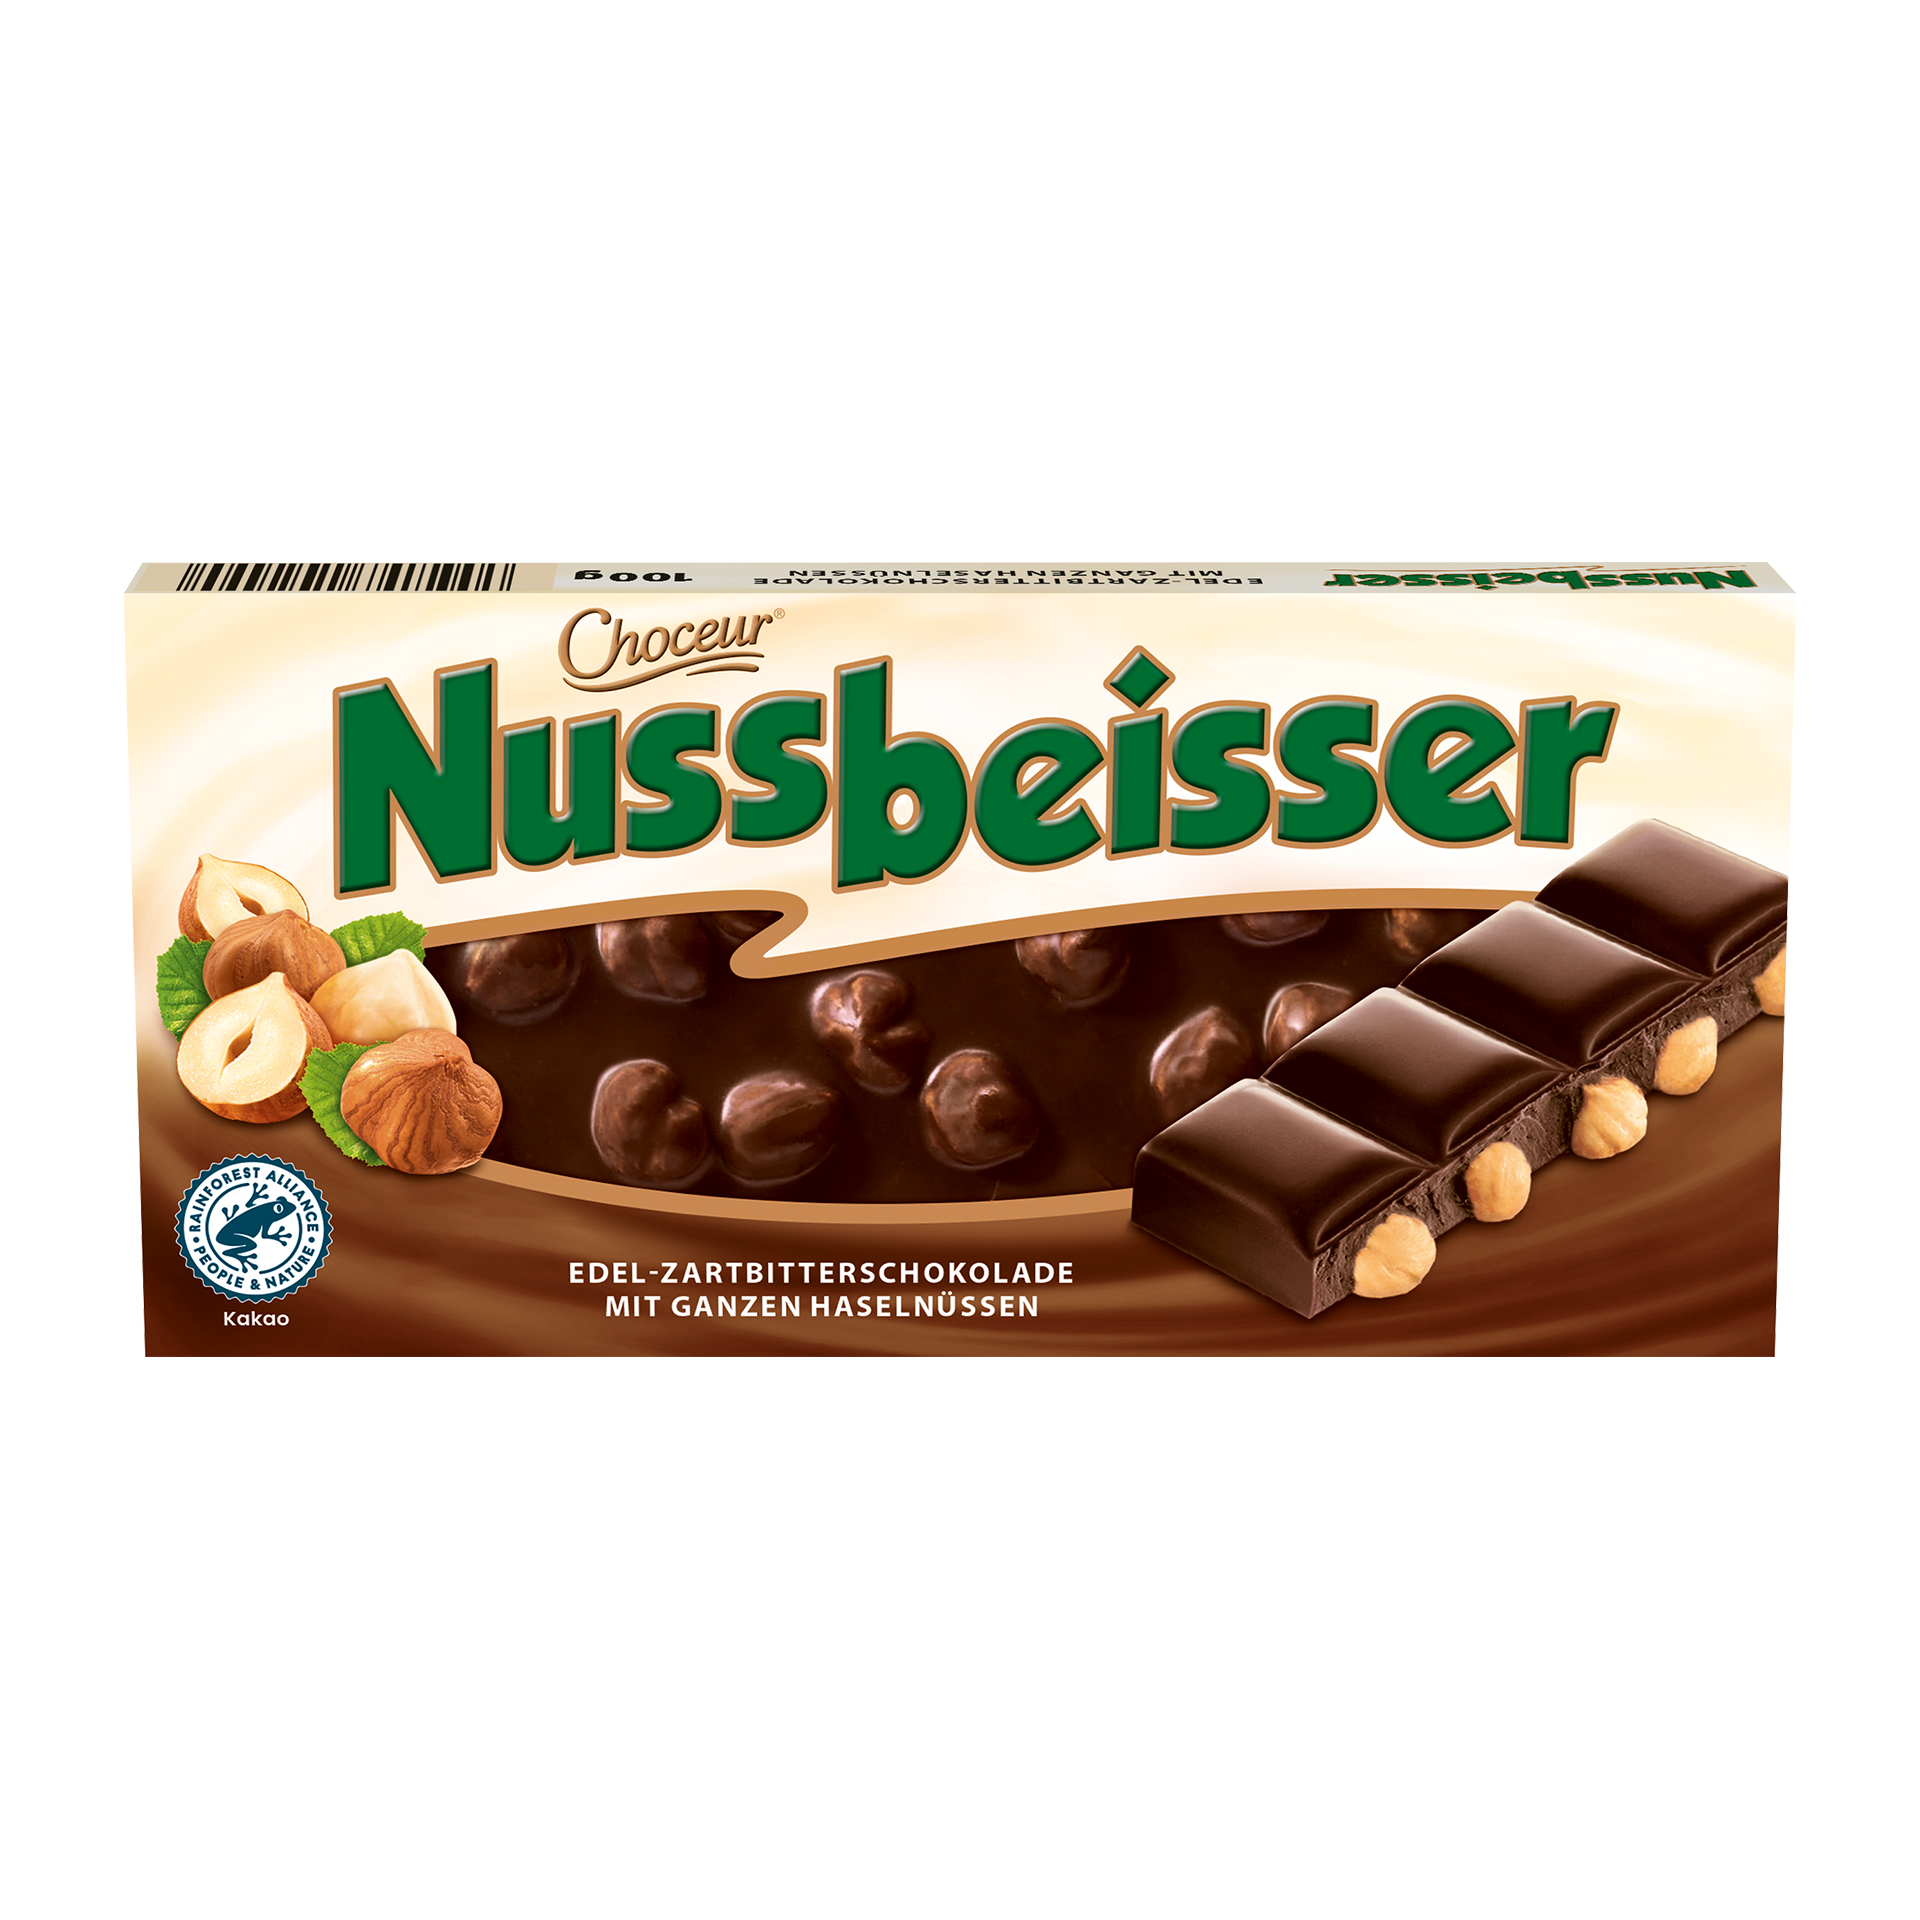 Немецкие шоколадки. Немецкий шоколад Nussbeisser. Германский шоколад молочный с фундуком. Немецкий шоколад с орехами. Немецкая шоколадка с орехами.